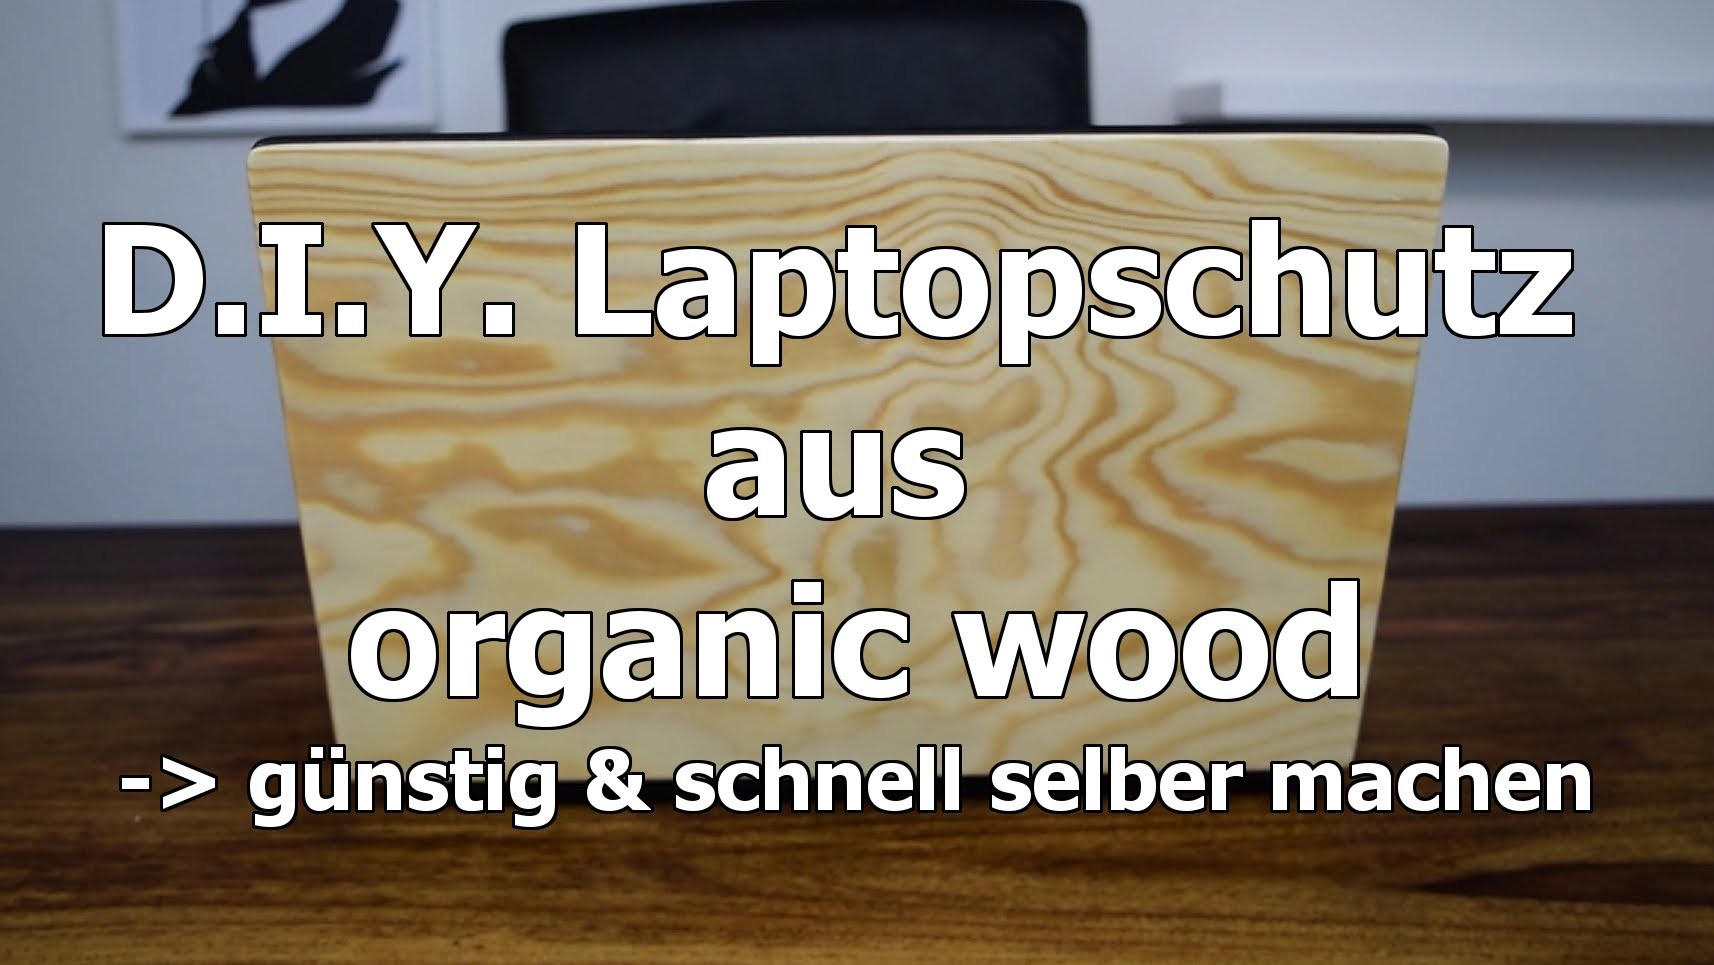 #DIY. 1. Laptopschutz aus echtem Holz. günstig & schnell selbst gemacht